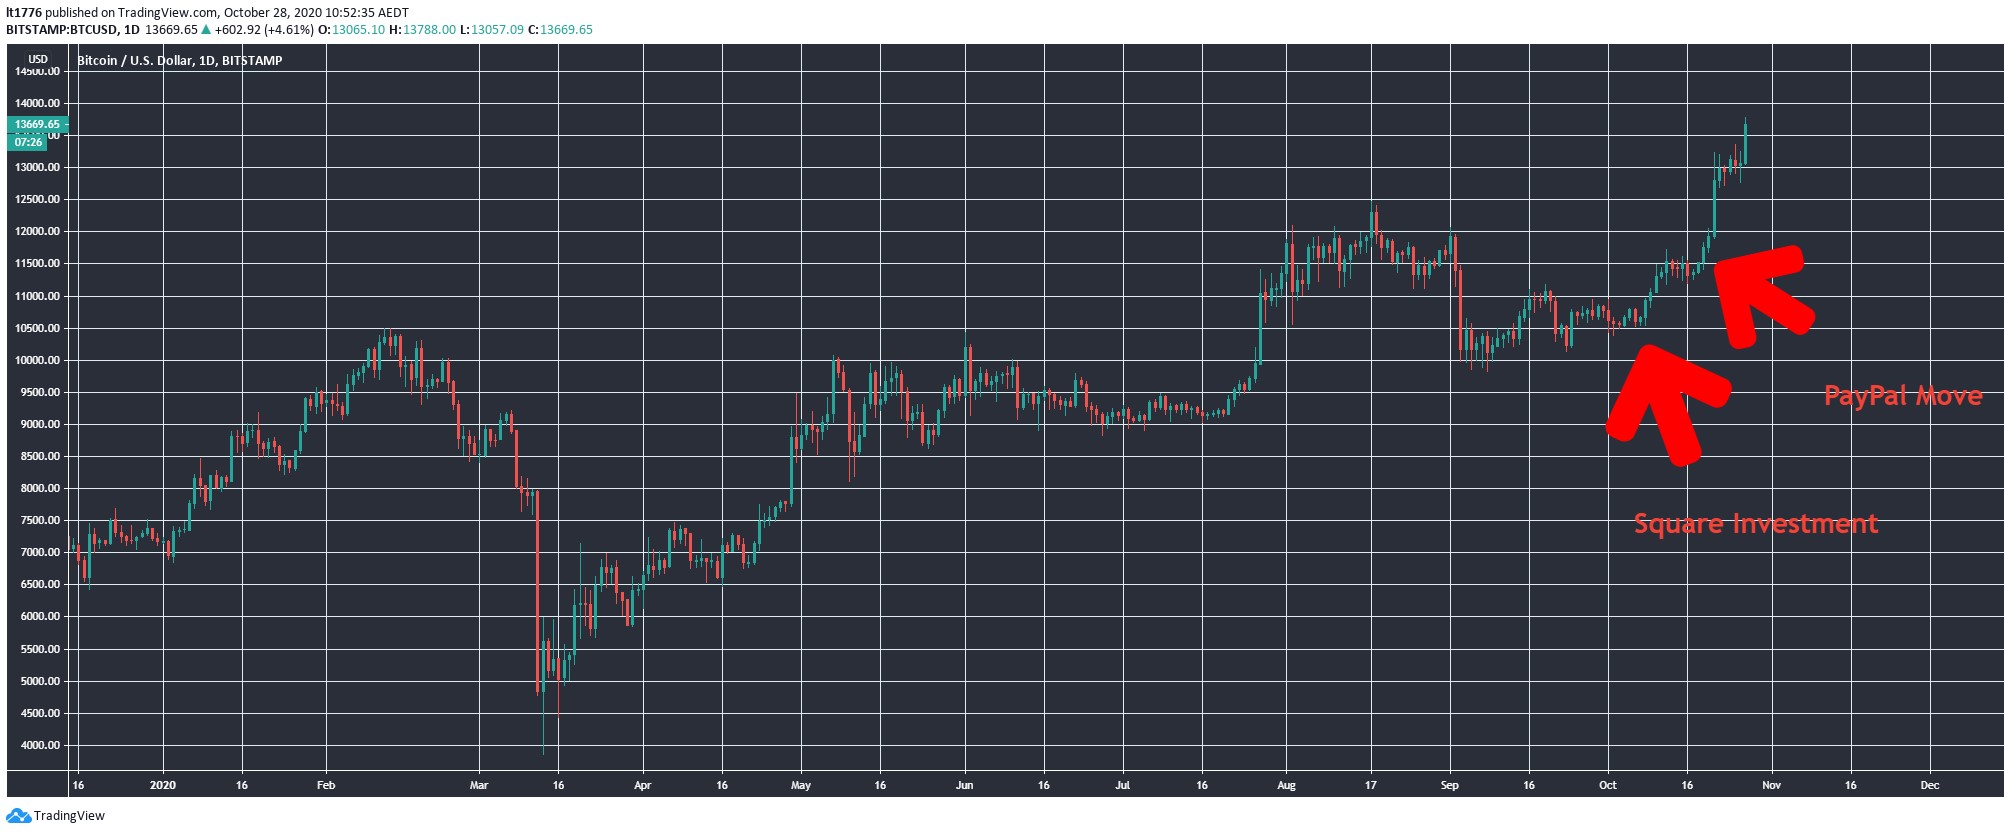 Bitcoin Price Chart - BTC Price Going Up